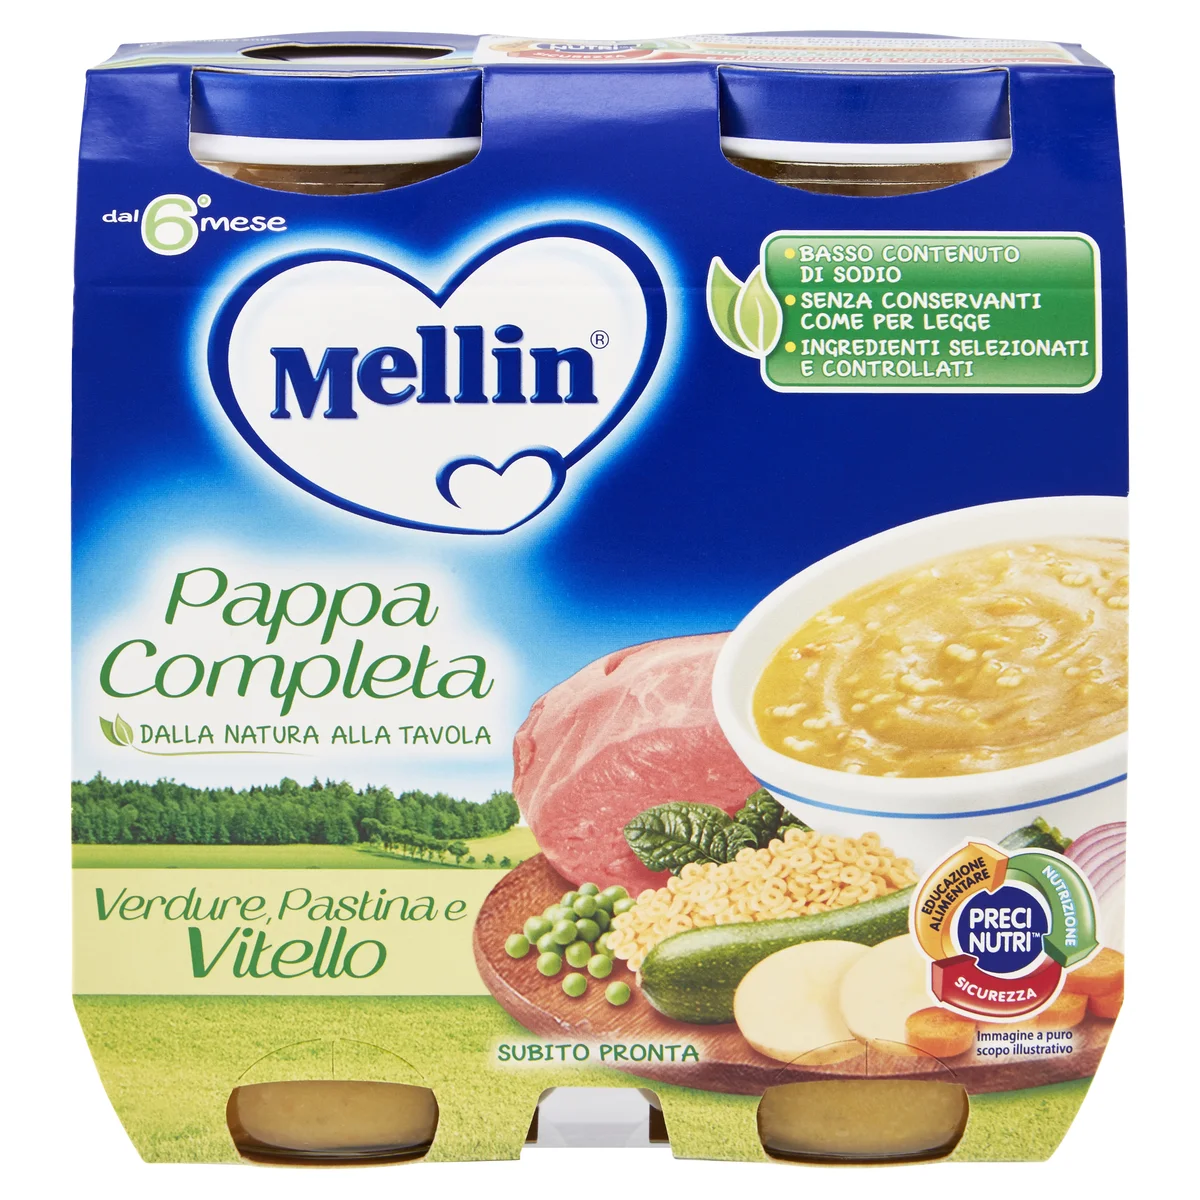 Mellin Pappa Completa Verdure, Pastina e Vitello 2 x 250 g